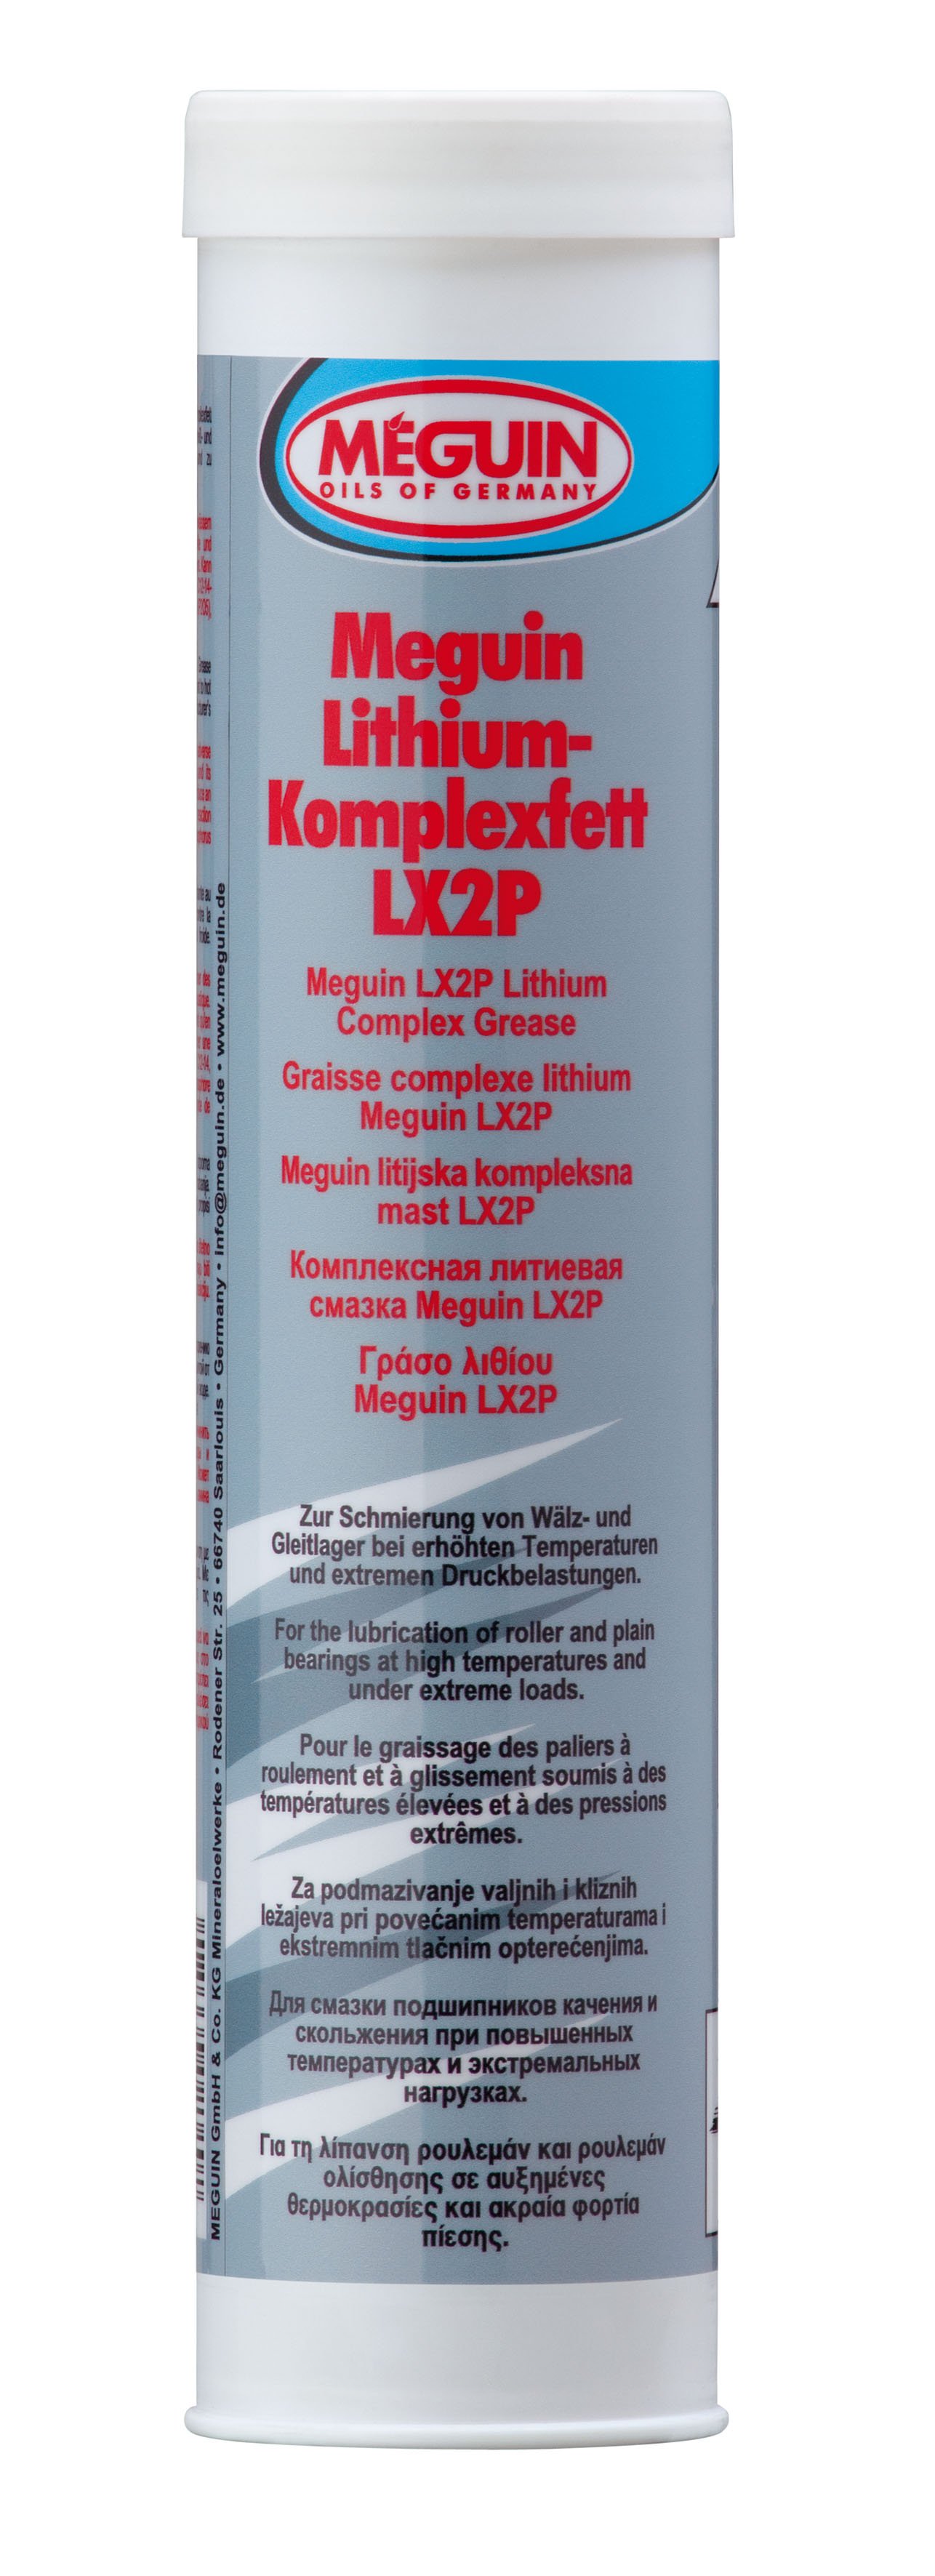 Смазка литиевая MEGUIN высокотемпературная LITHIUM-KOMPLEXFETT LX2P0 8645 - 400 гр.